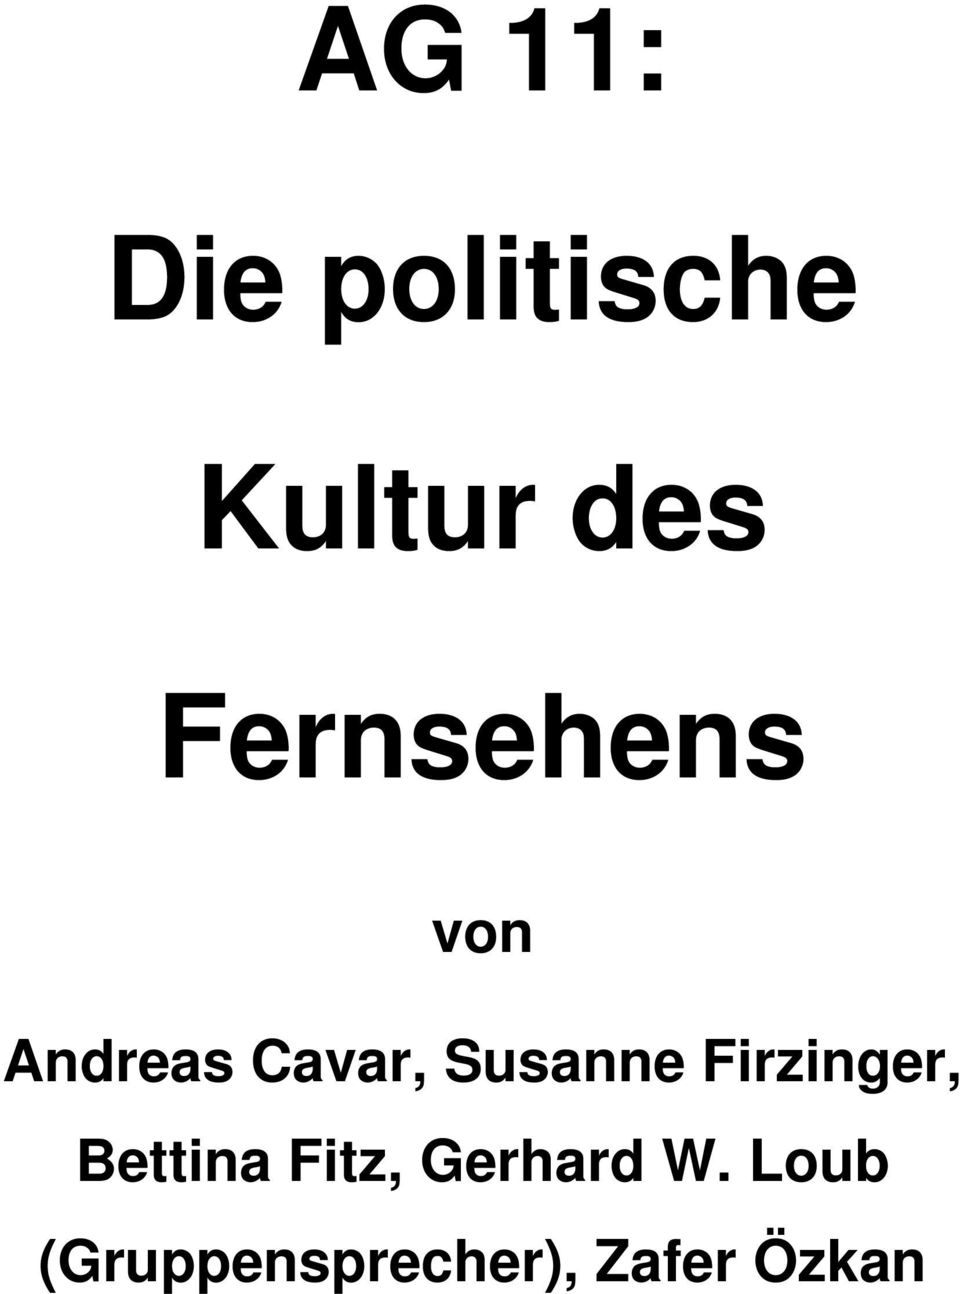 Susanne Firzinger, Bettina Fitz,